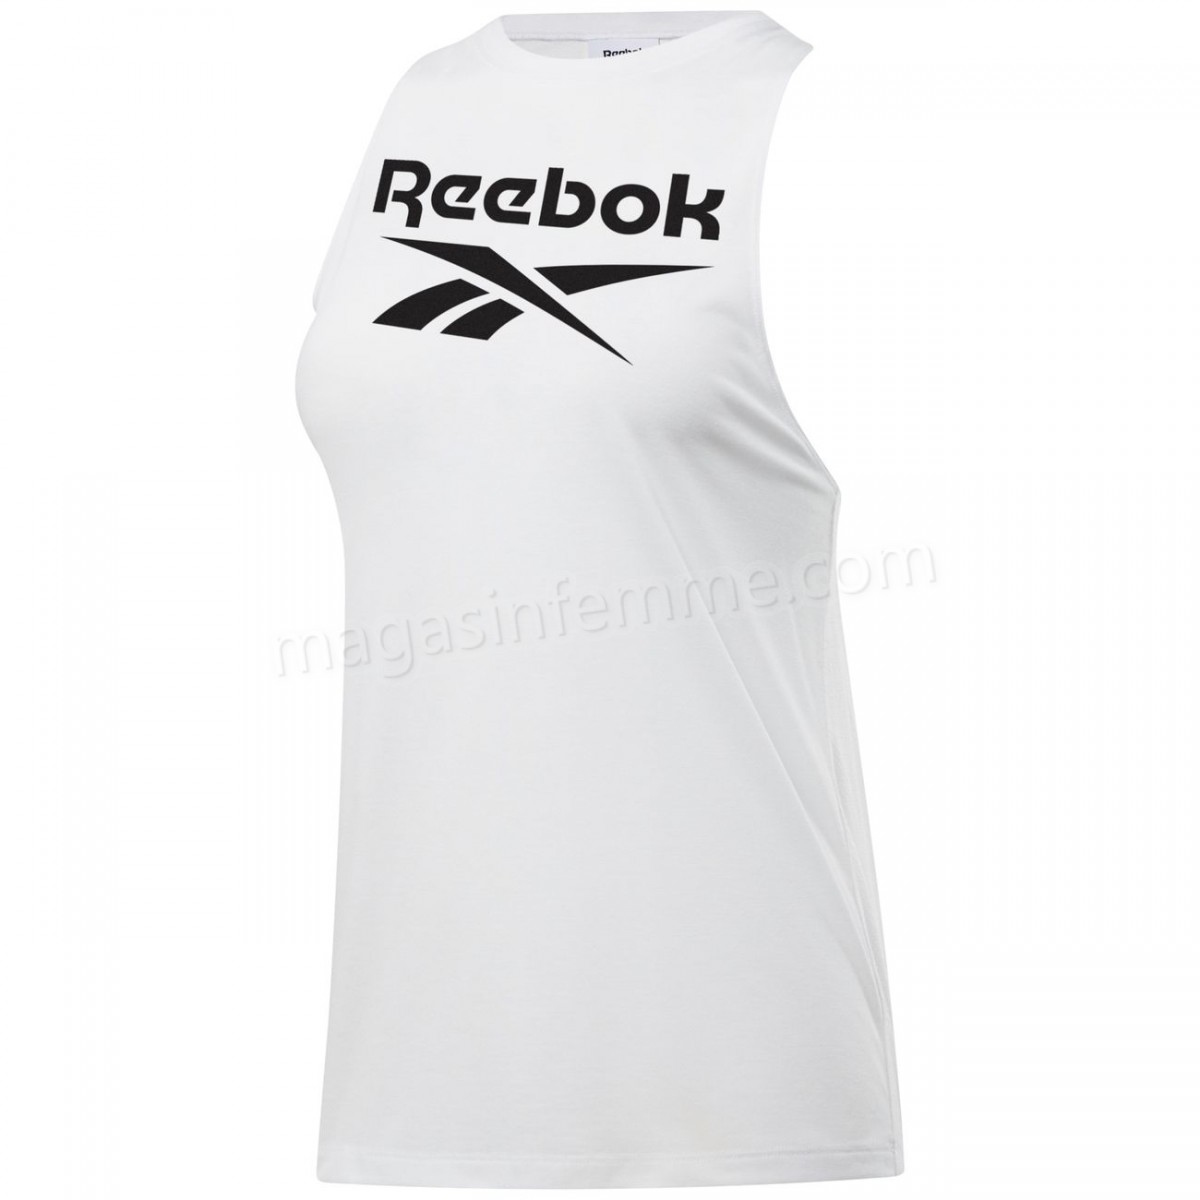 Reebok-Fitness femme REEBOK Débardeur femme Reebok Workout Ready Supremium BL en solde - -1